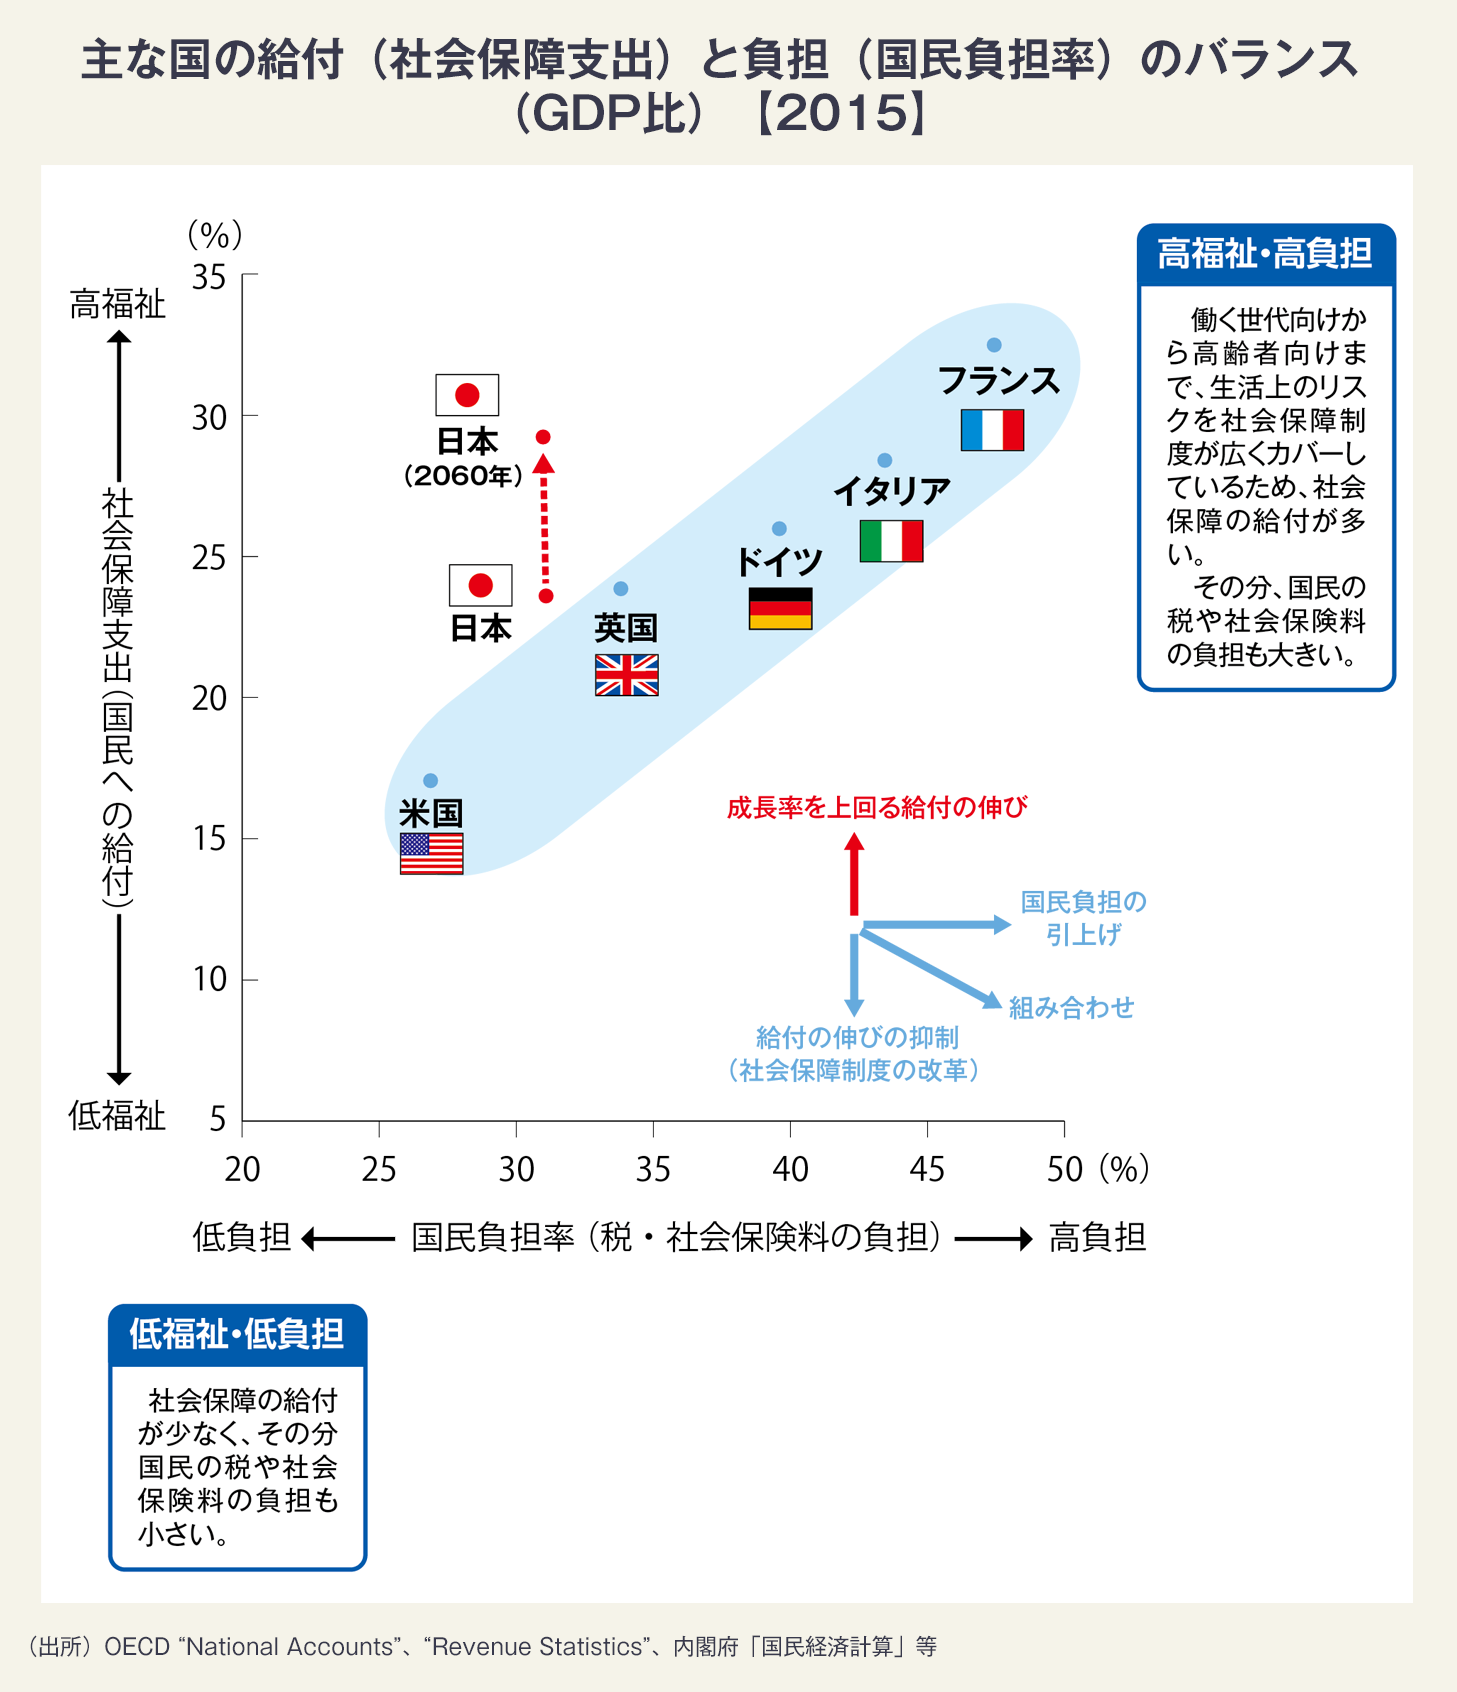 図・受益（社会保障支出）と負担（国民負担率）のバランス（GDP比）比較表。2015年のデータに基づき、6カ国を比較するもの。日本の負担率の高さは上から5番目、受益の高さは上から5番目。